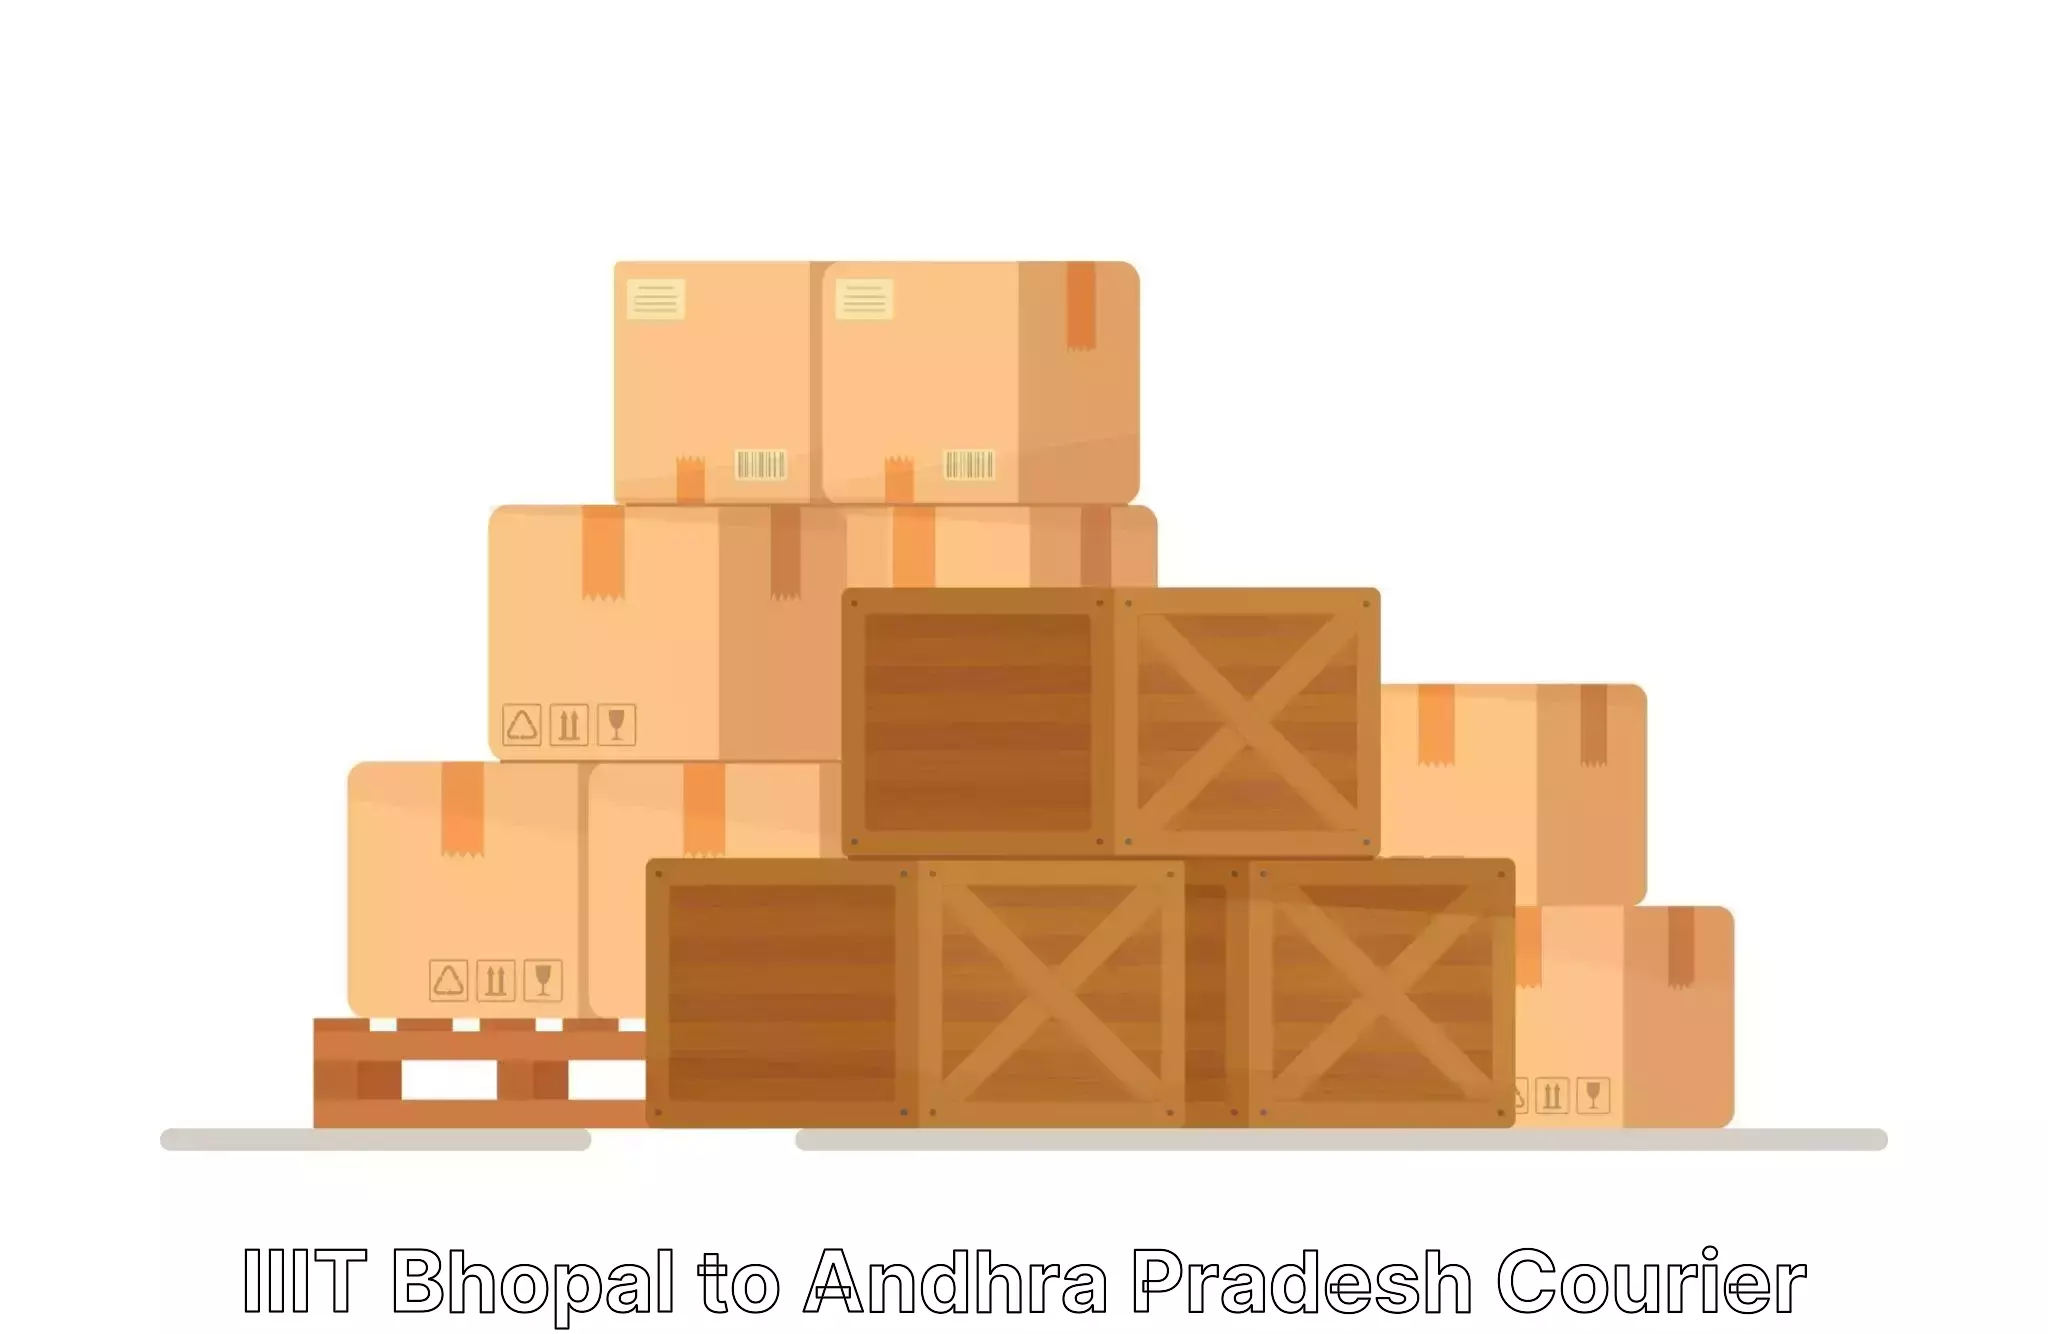 Household moving solutions IIIT Bhopal to Konduru